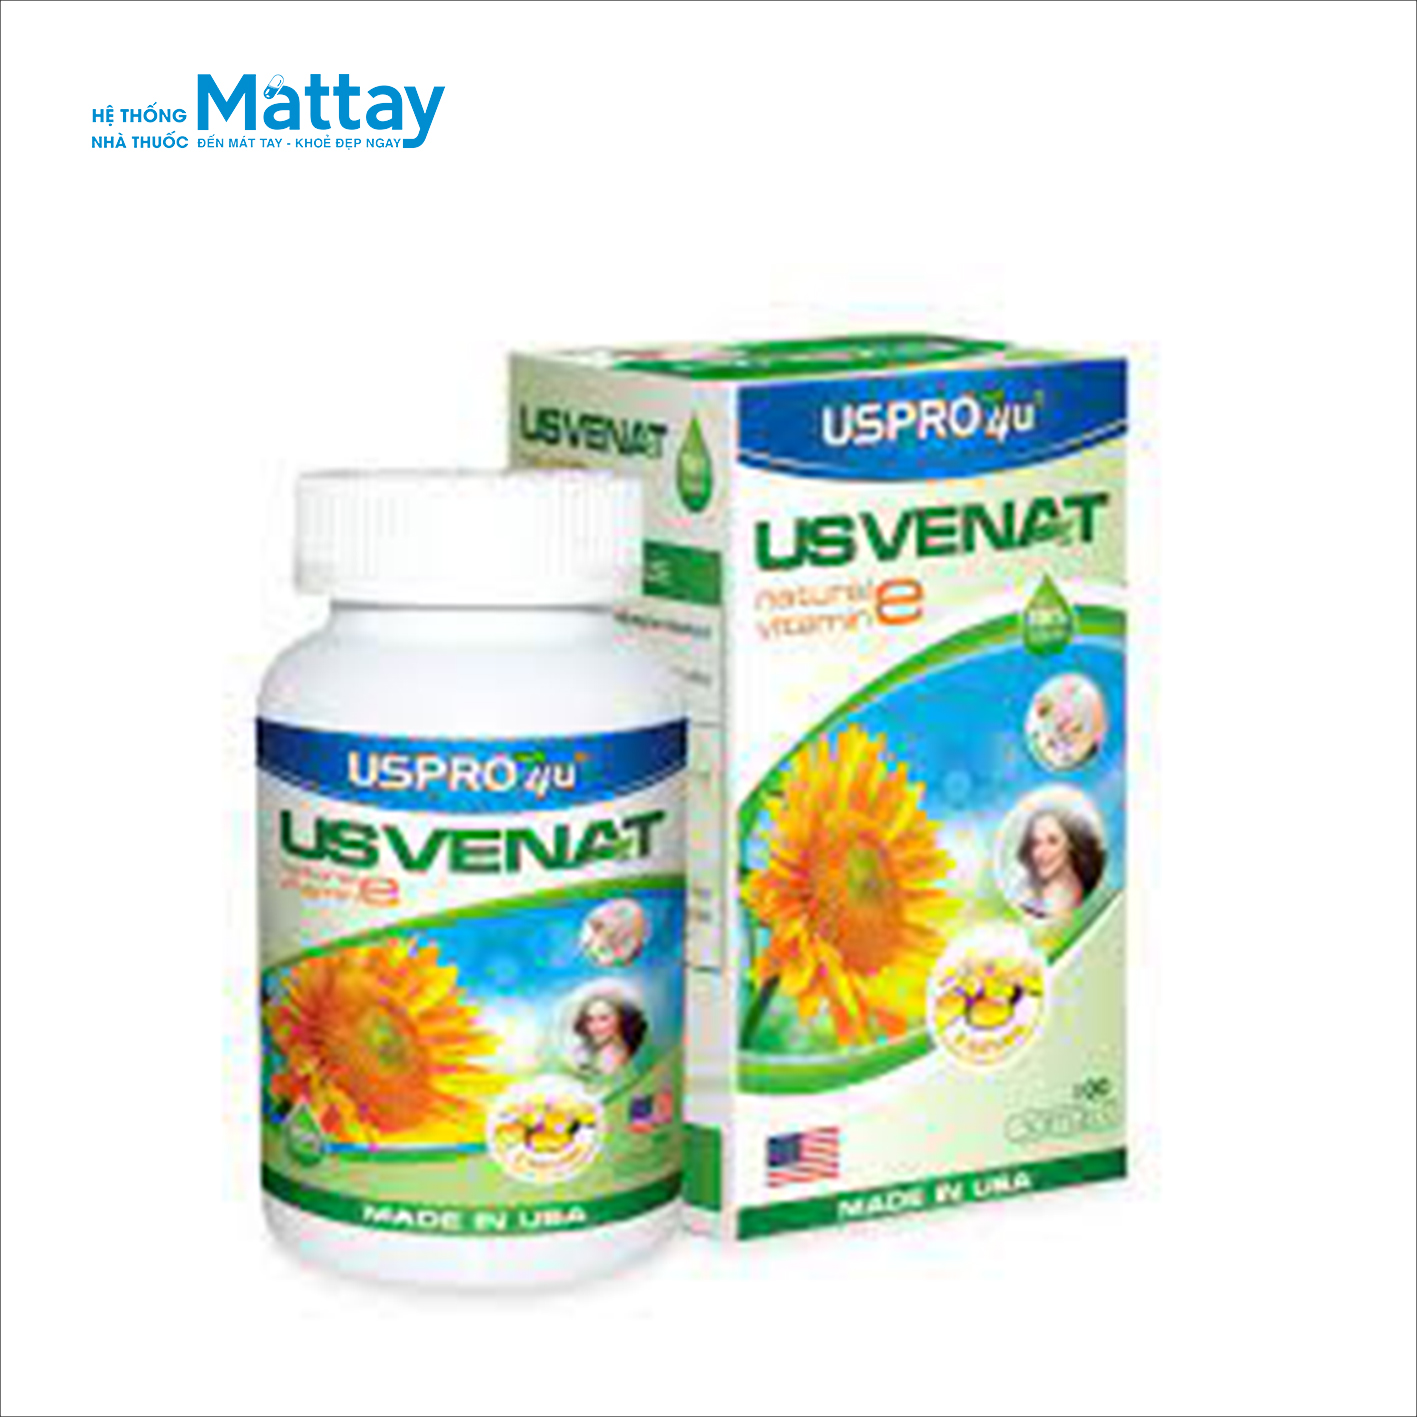 Usvenat – Hộp 100 viên – Bổ sung vitamin E cho cơ thể